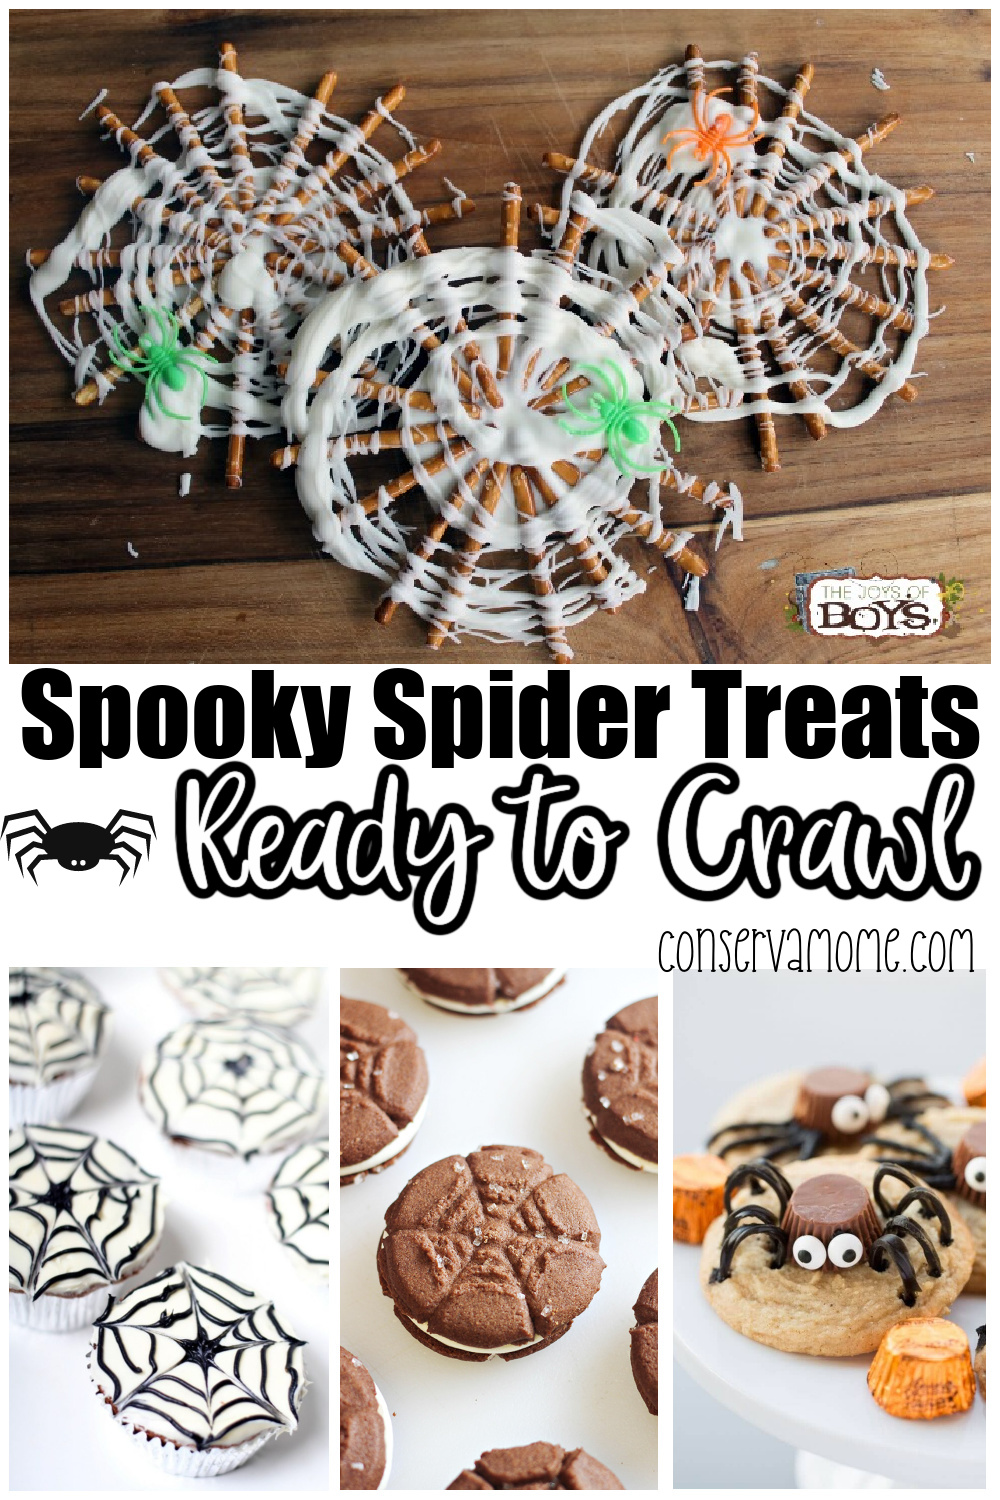 Spooky Spider Treats Ready to Crawl